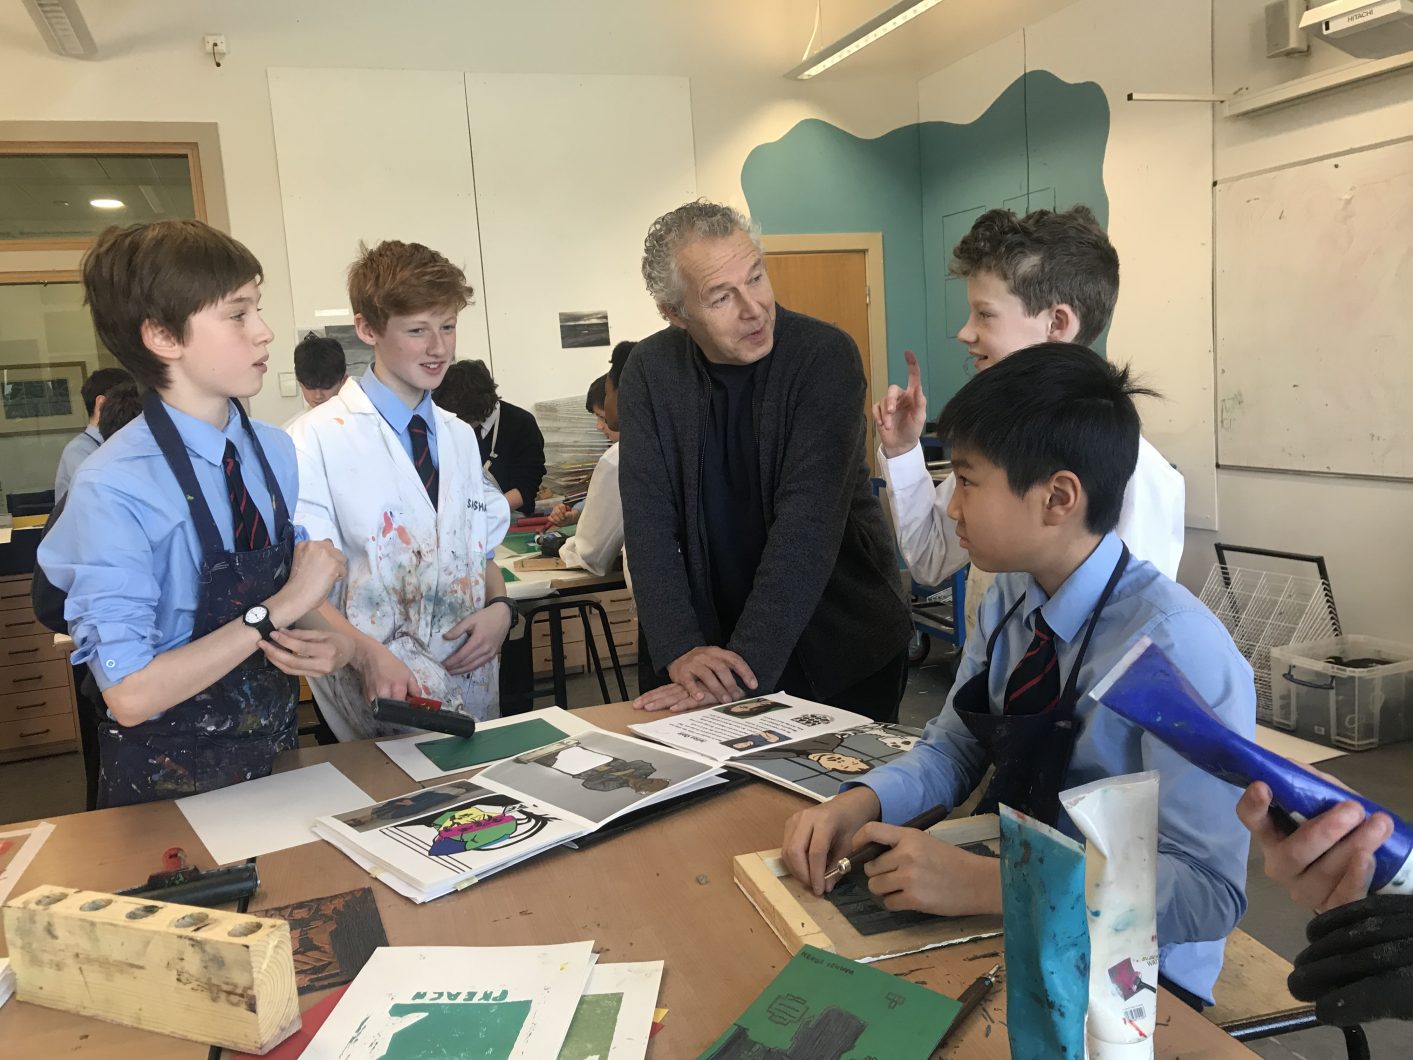 Julian Opie with Magdalen College School pupils in art studio